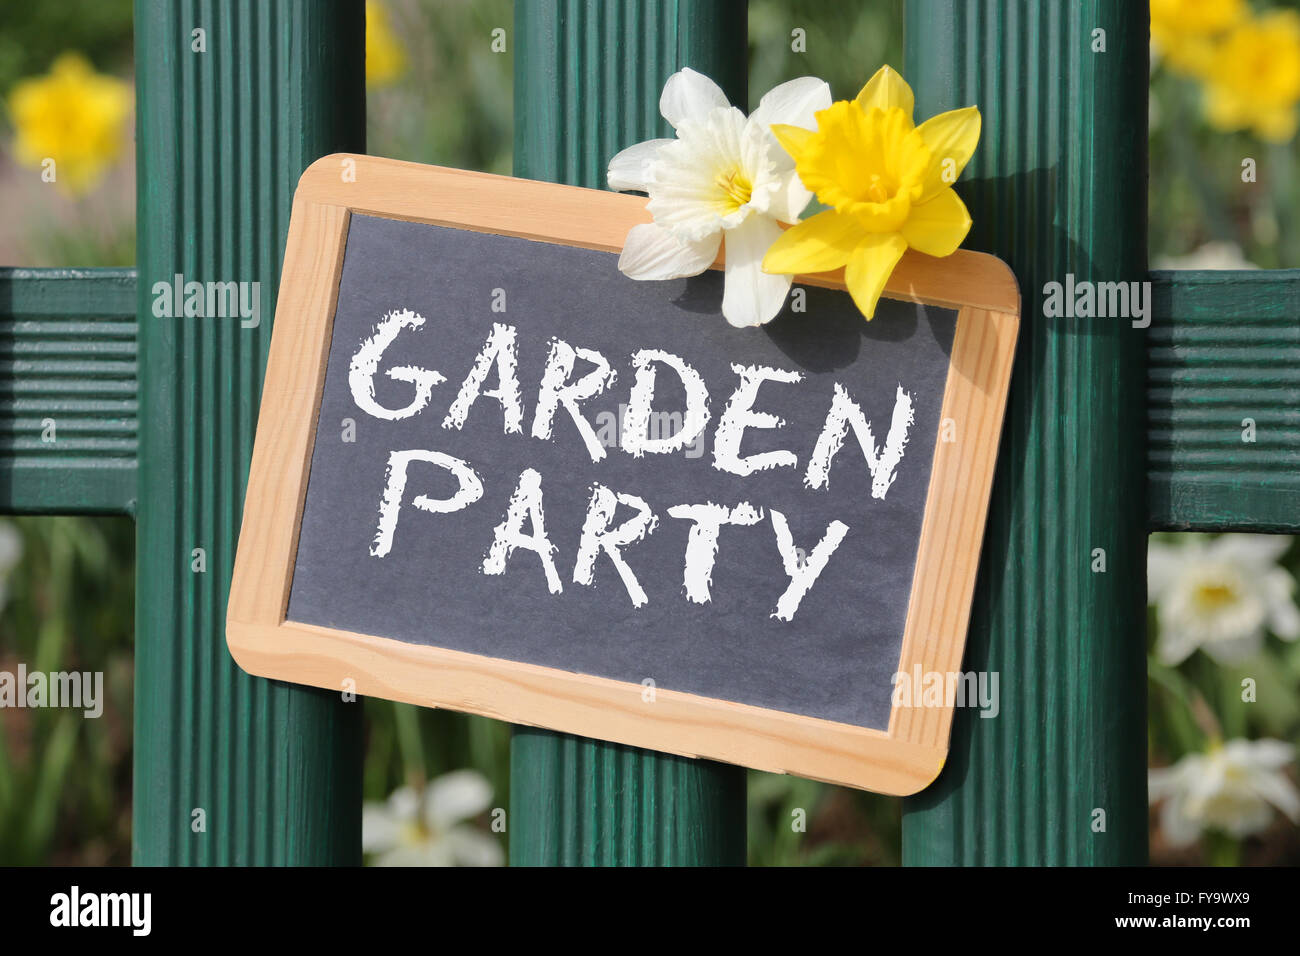 Garten Party mit Blumen Blume Schild am Zaun Stockfoto